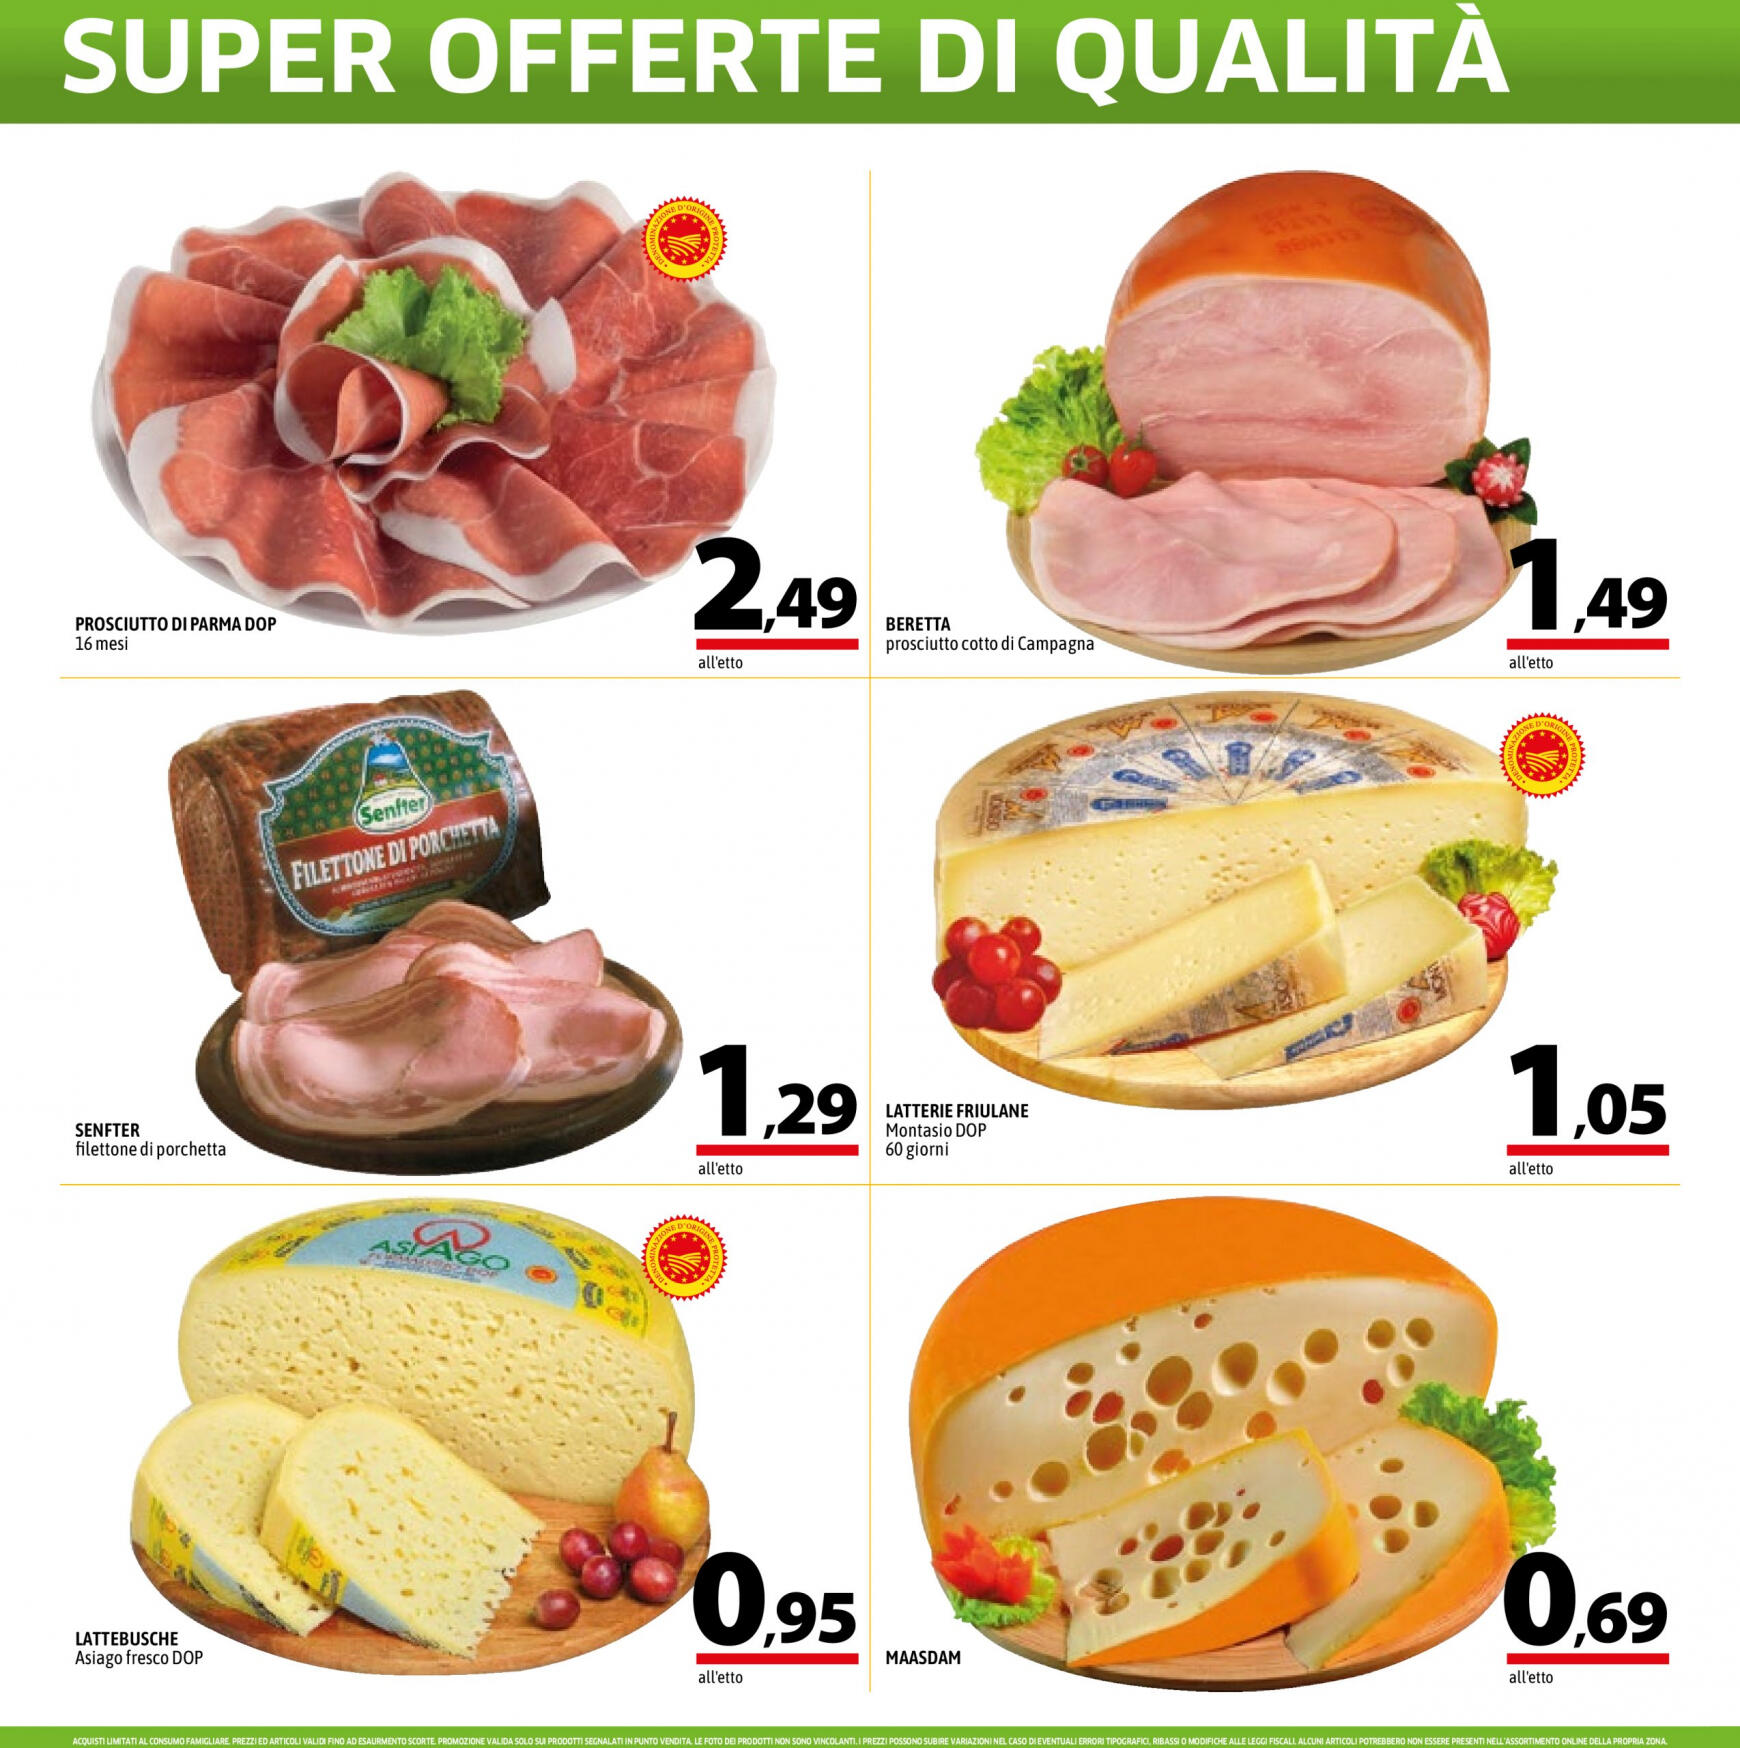 a-o - Nuovo volantino A&O - Super Offerte Di Qualita' 02.05. - 15.05. - page: 4